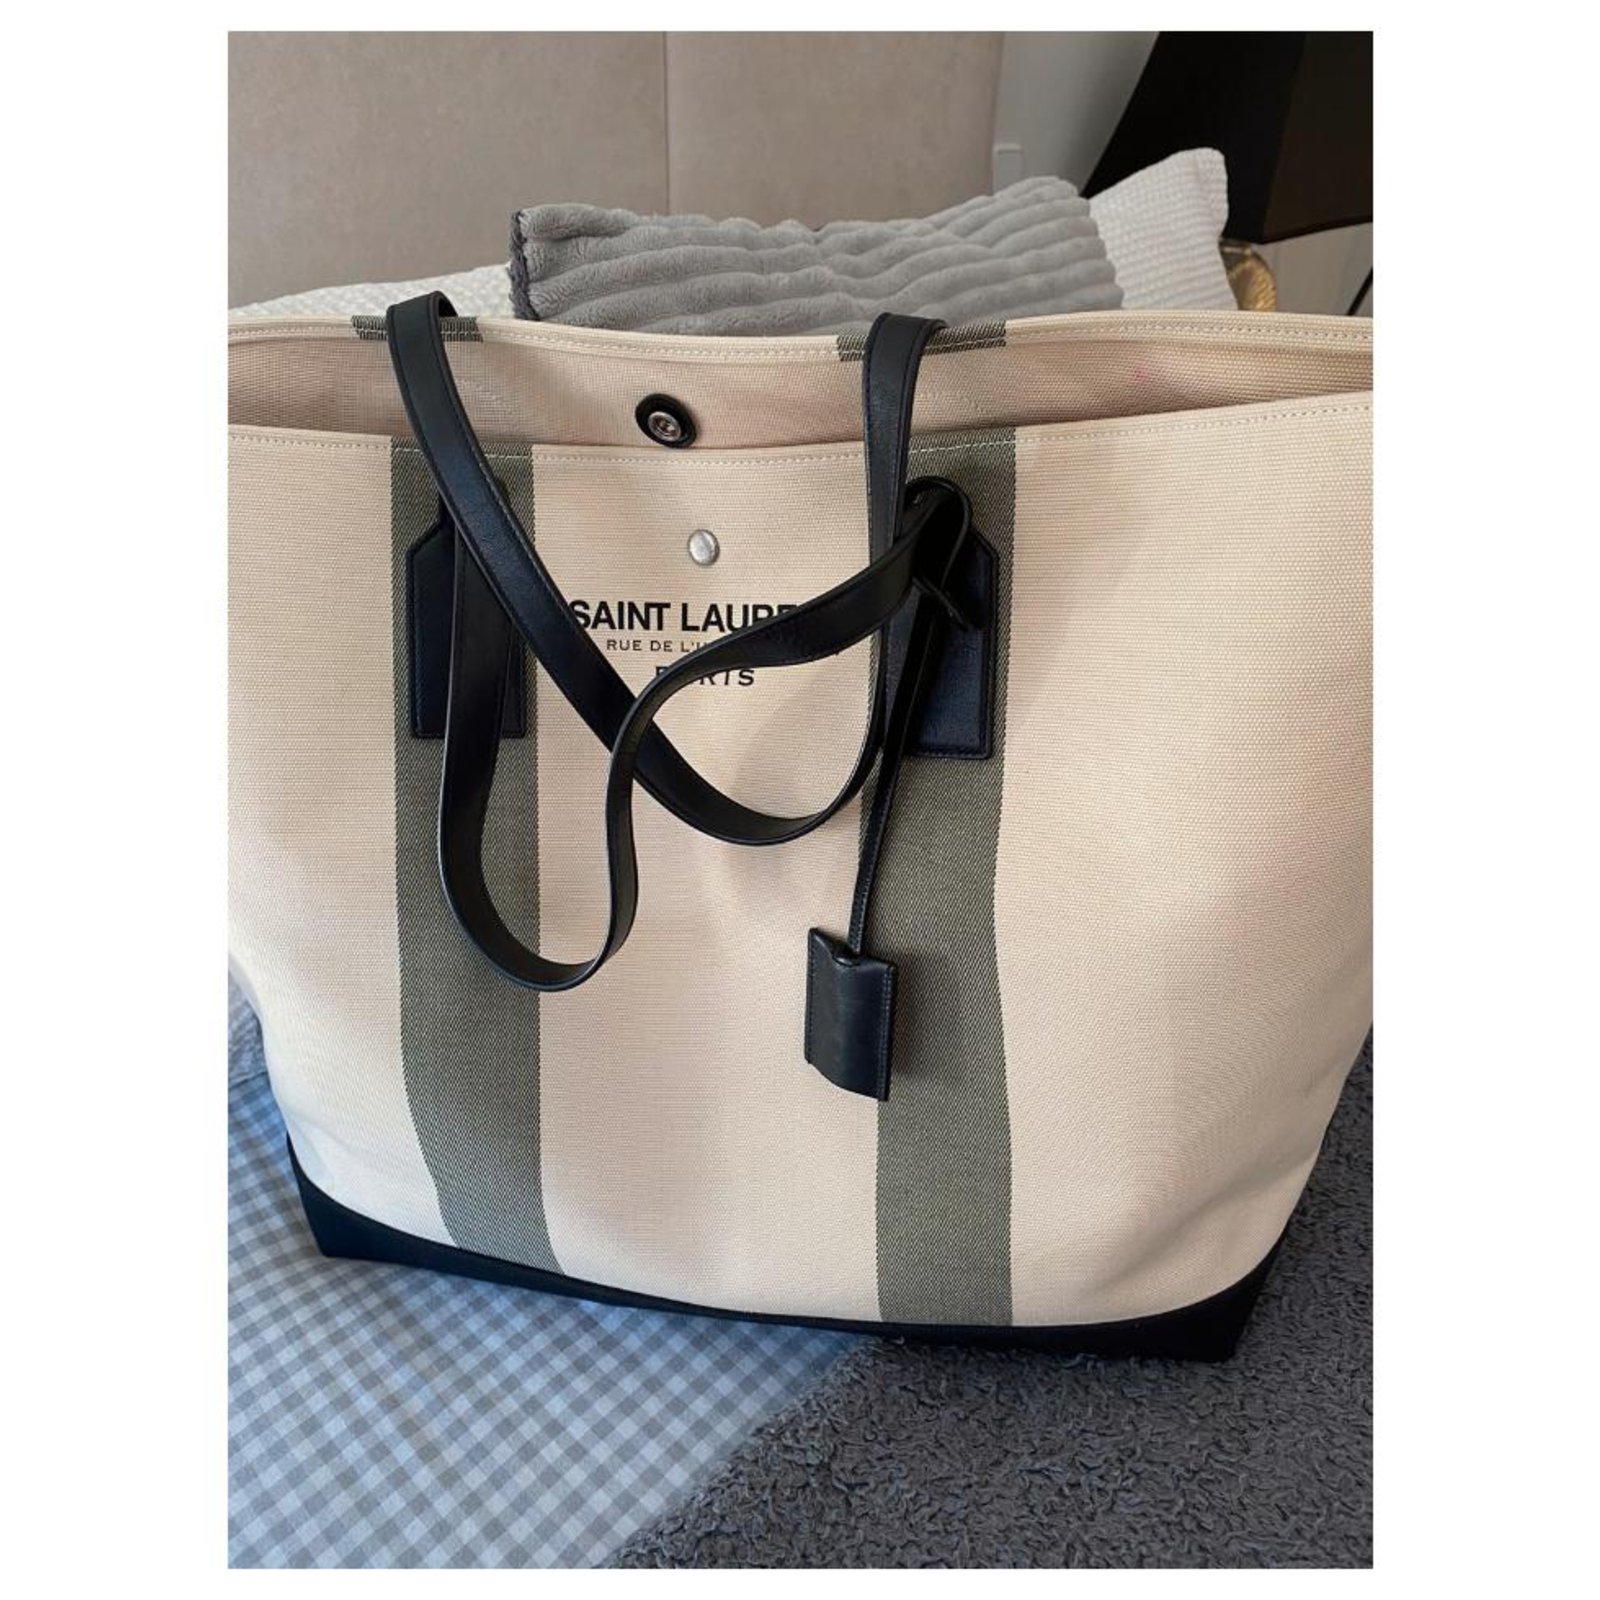 Black Rive Gauche striped cotton-canvas tote bag, Saint Laurent